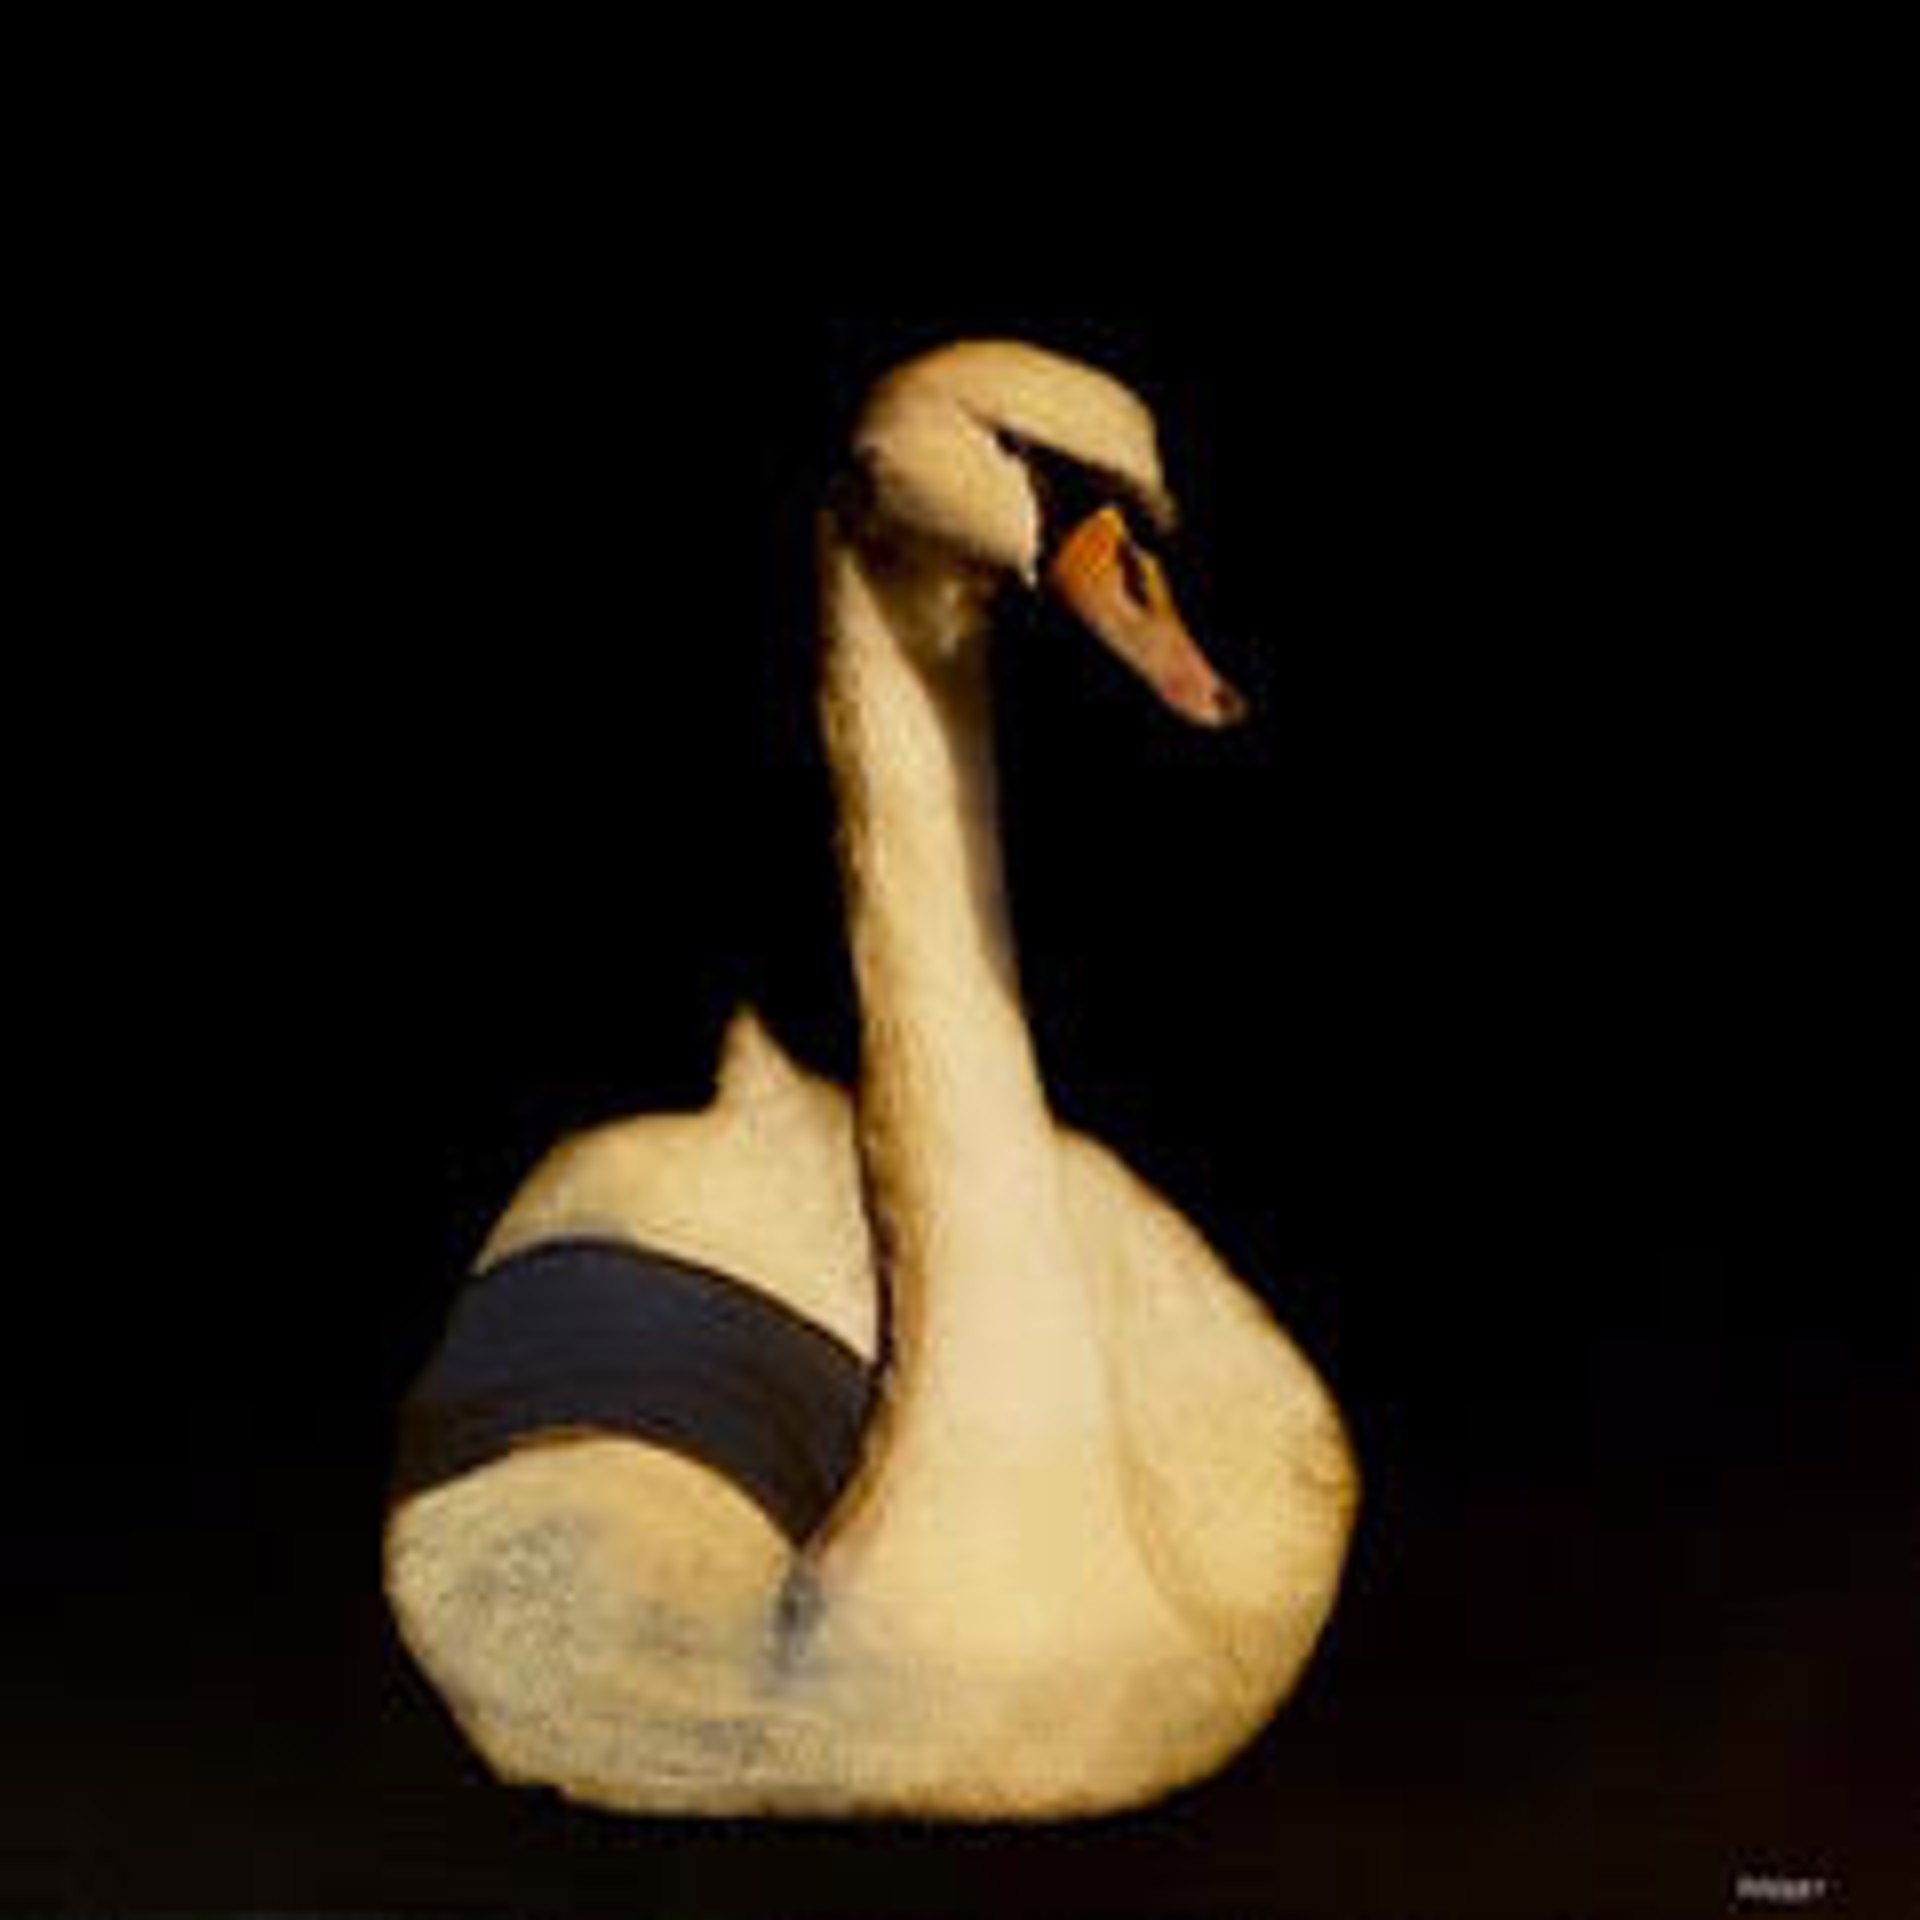 Swan Song II by Dawne Raulet